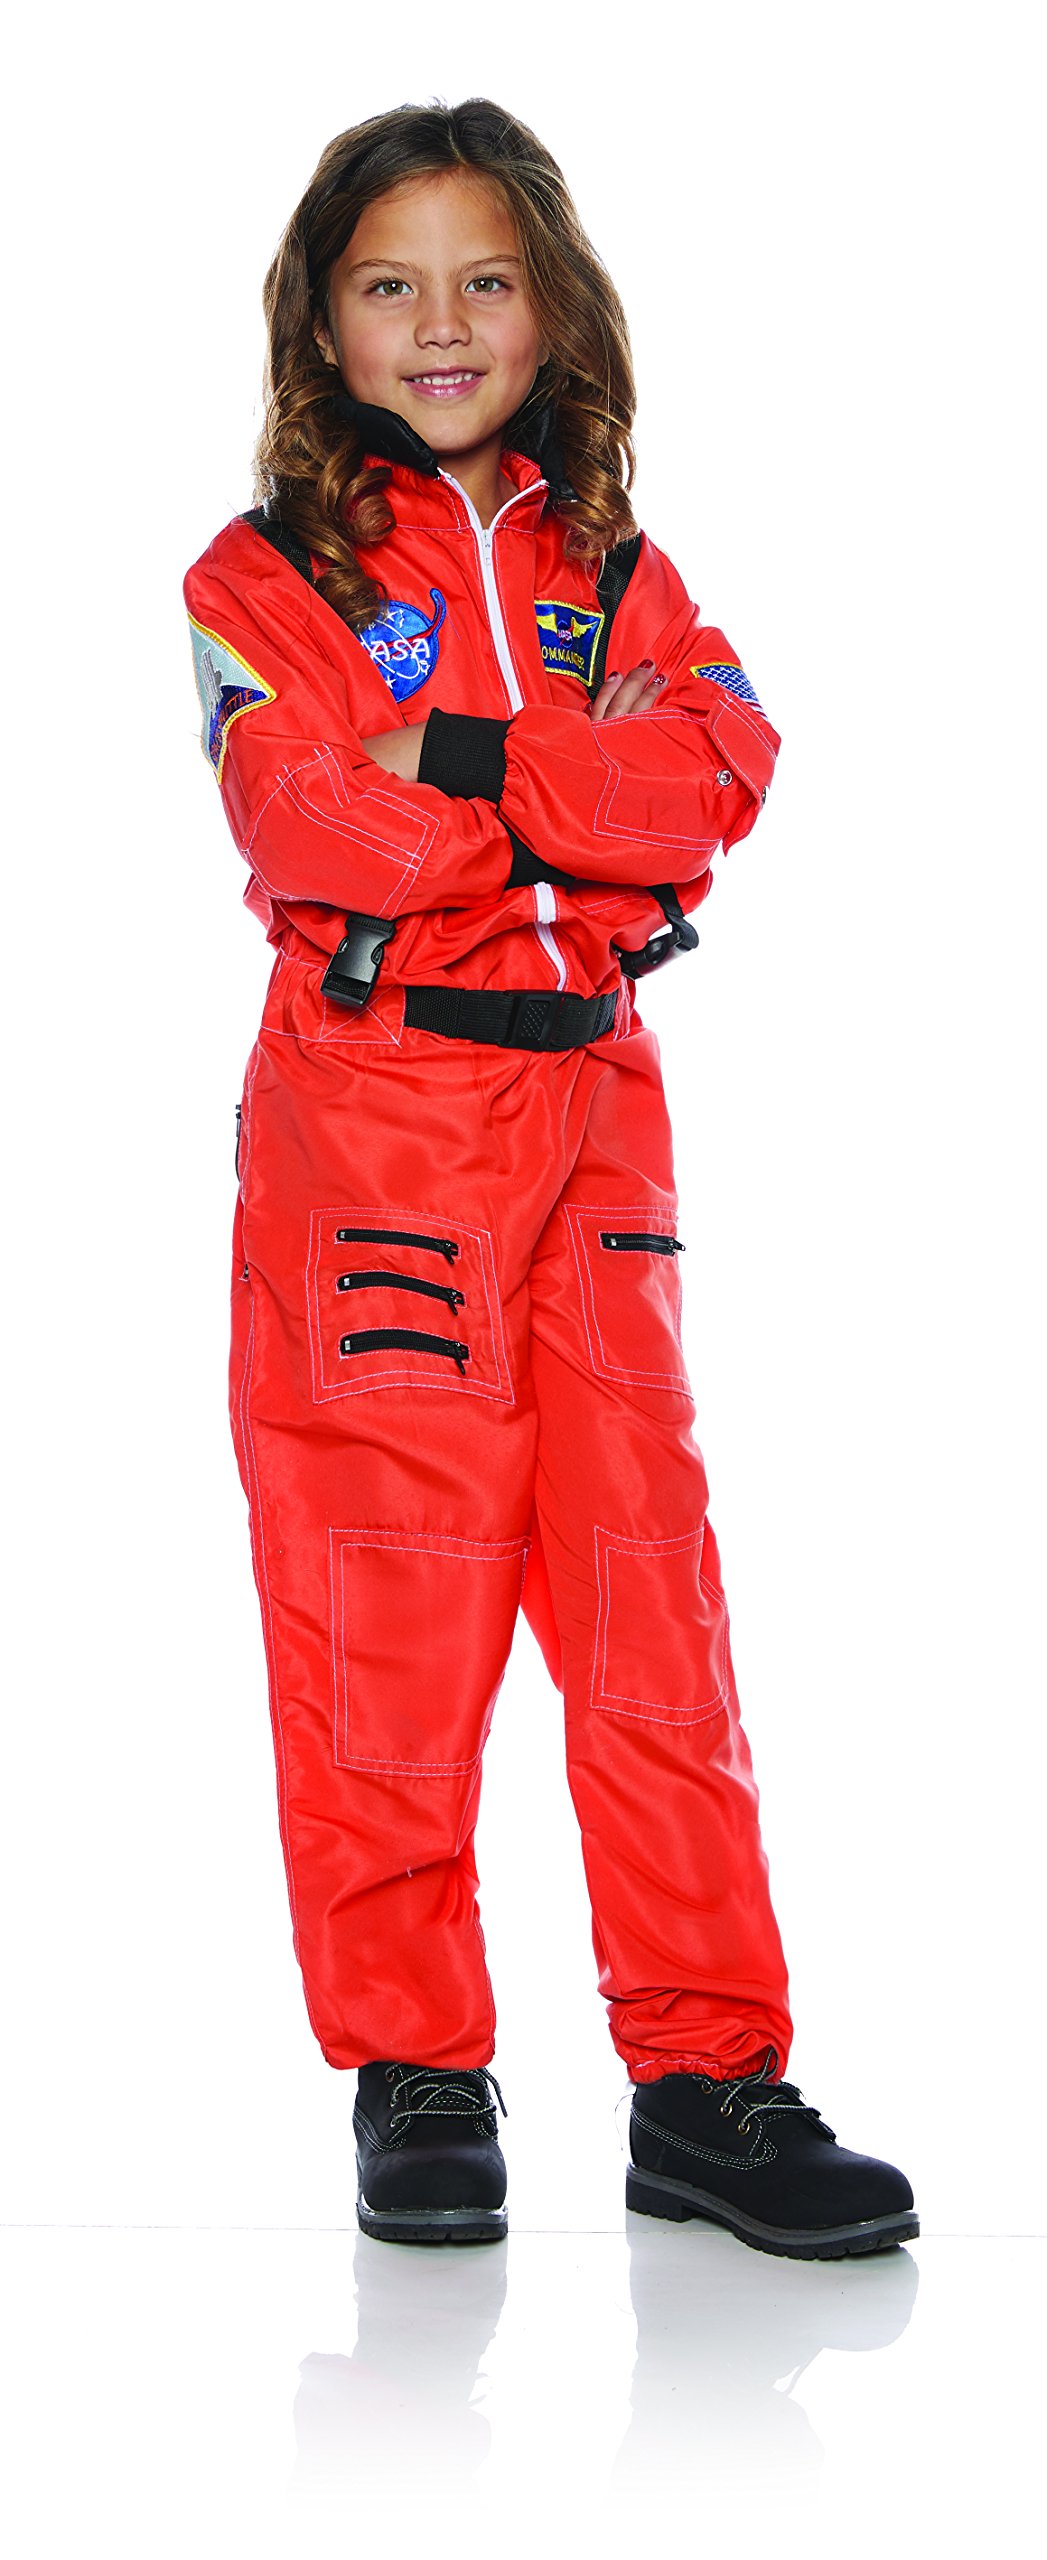 Underwraps Children's Astronaut Costume - Orange, Large (10-12)